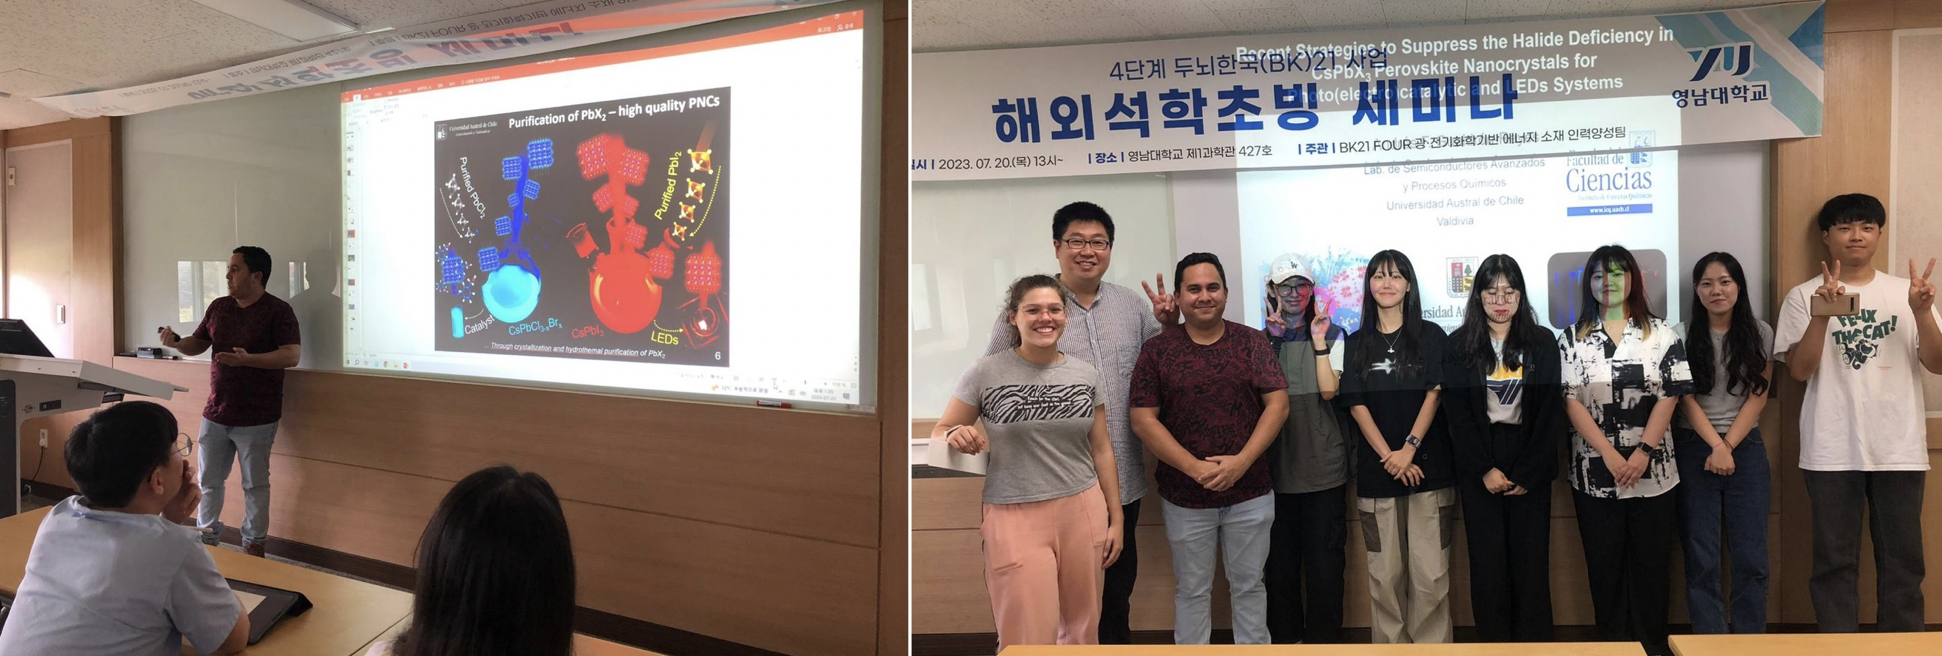 Imagen 2. Seminario de investigación a cargo del Prof. Andrés Gualdrón, dado en las instalaciones de la Universidad de Yeungnam, Corea del Sur.